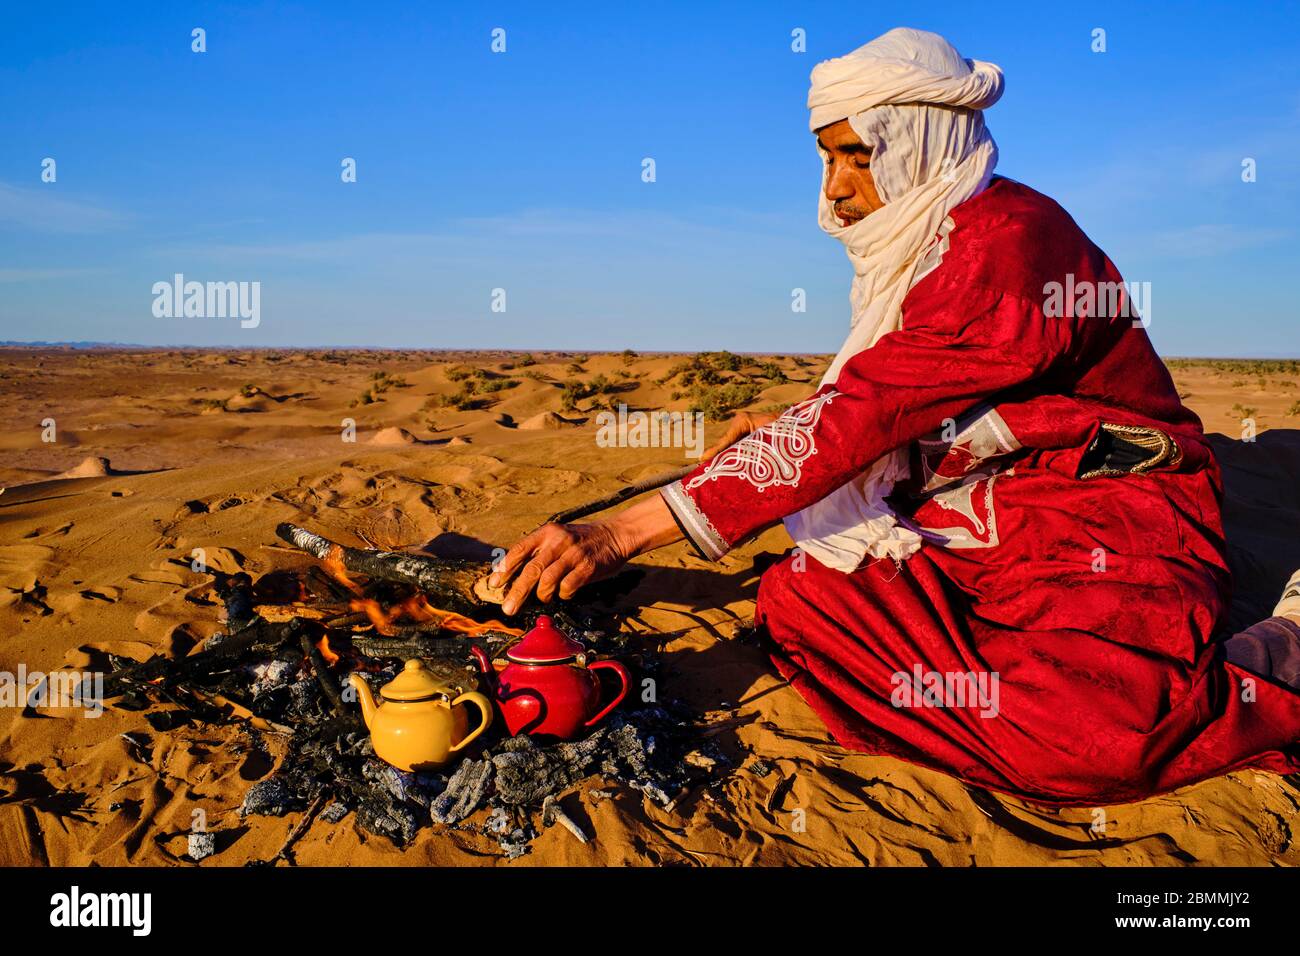 Morocco, Tafilalet region, Merzouga desert, erg Chebbi dunes, making tea in the desert Stock Photo